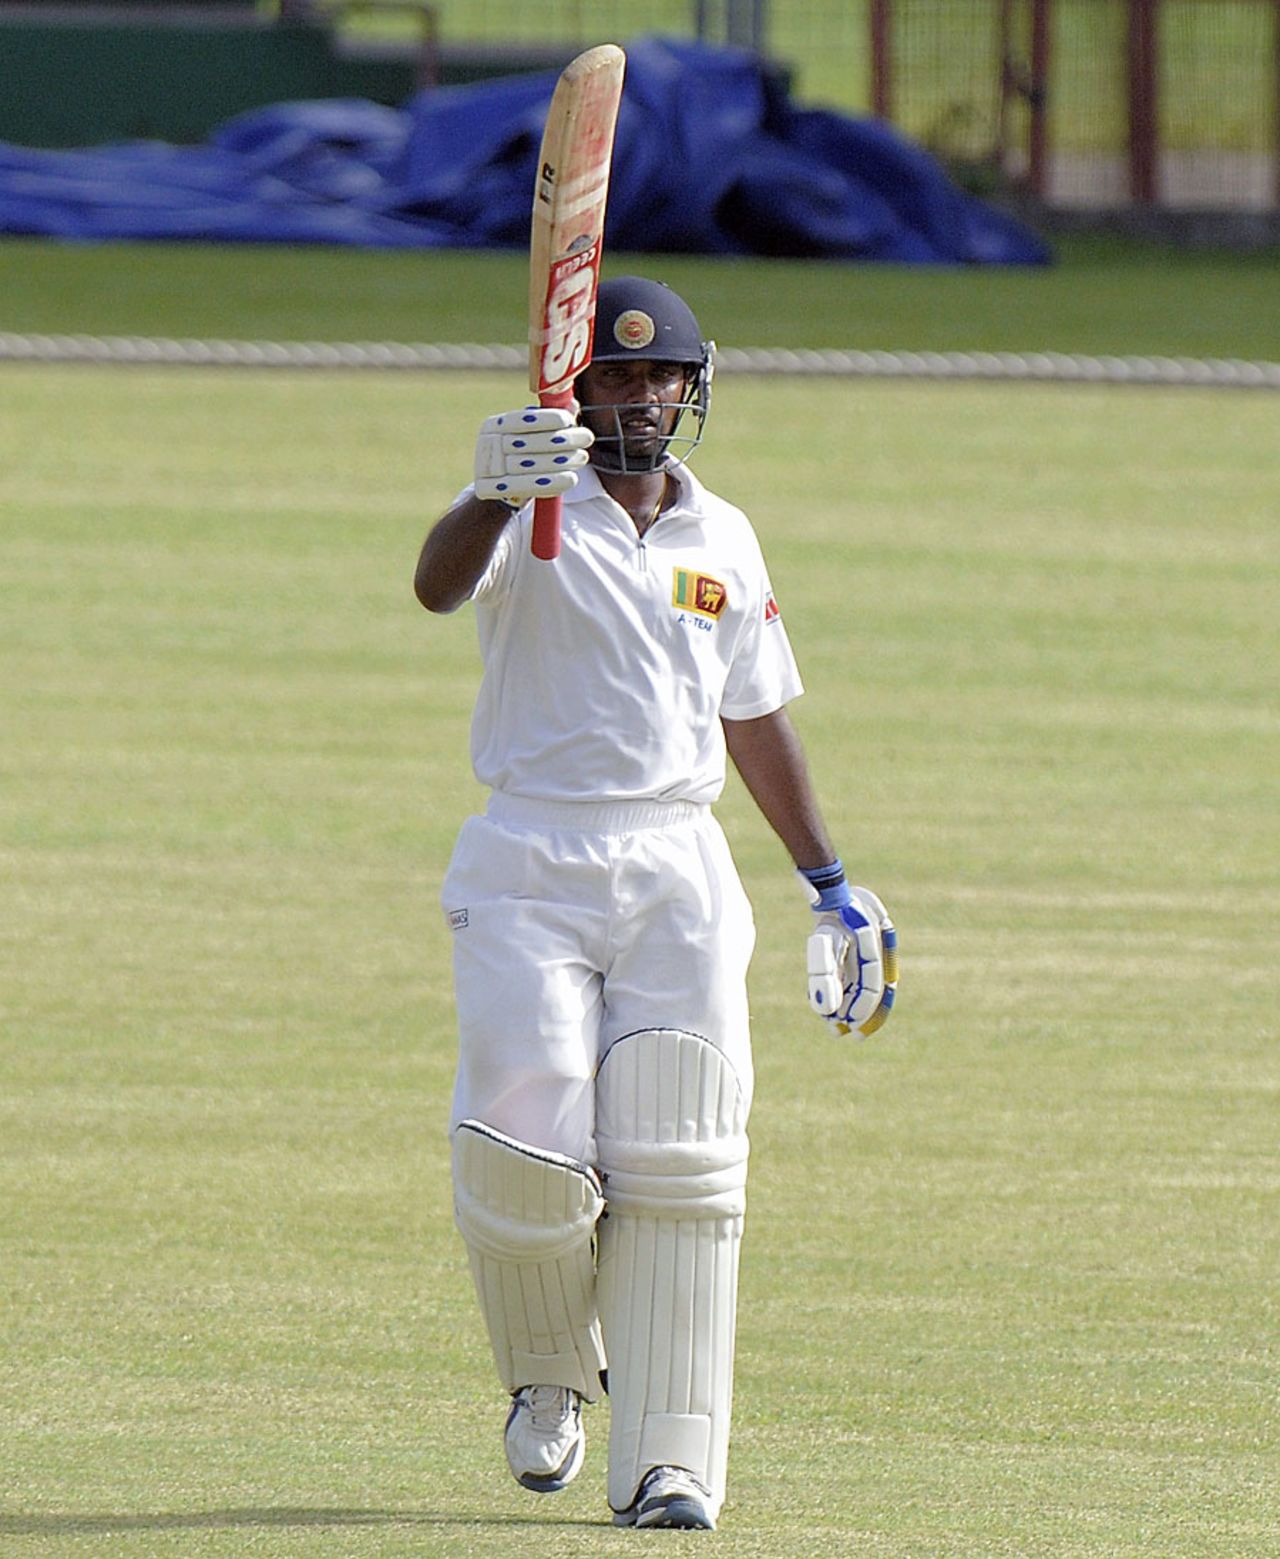 Udara Jayasundera scored an unbeaten 50, West Indies A v Sri Lanka A, 2nd unofficial Test, 4th day, Kingstown, June 15, 2013